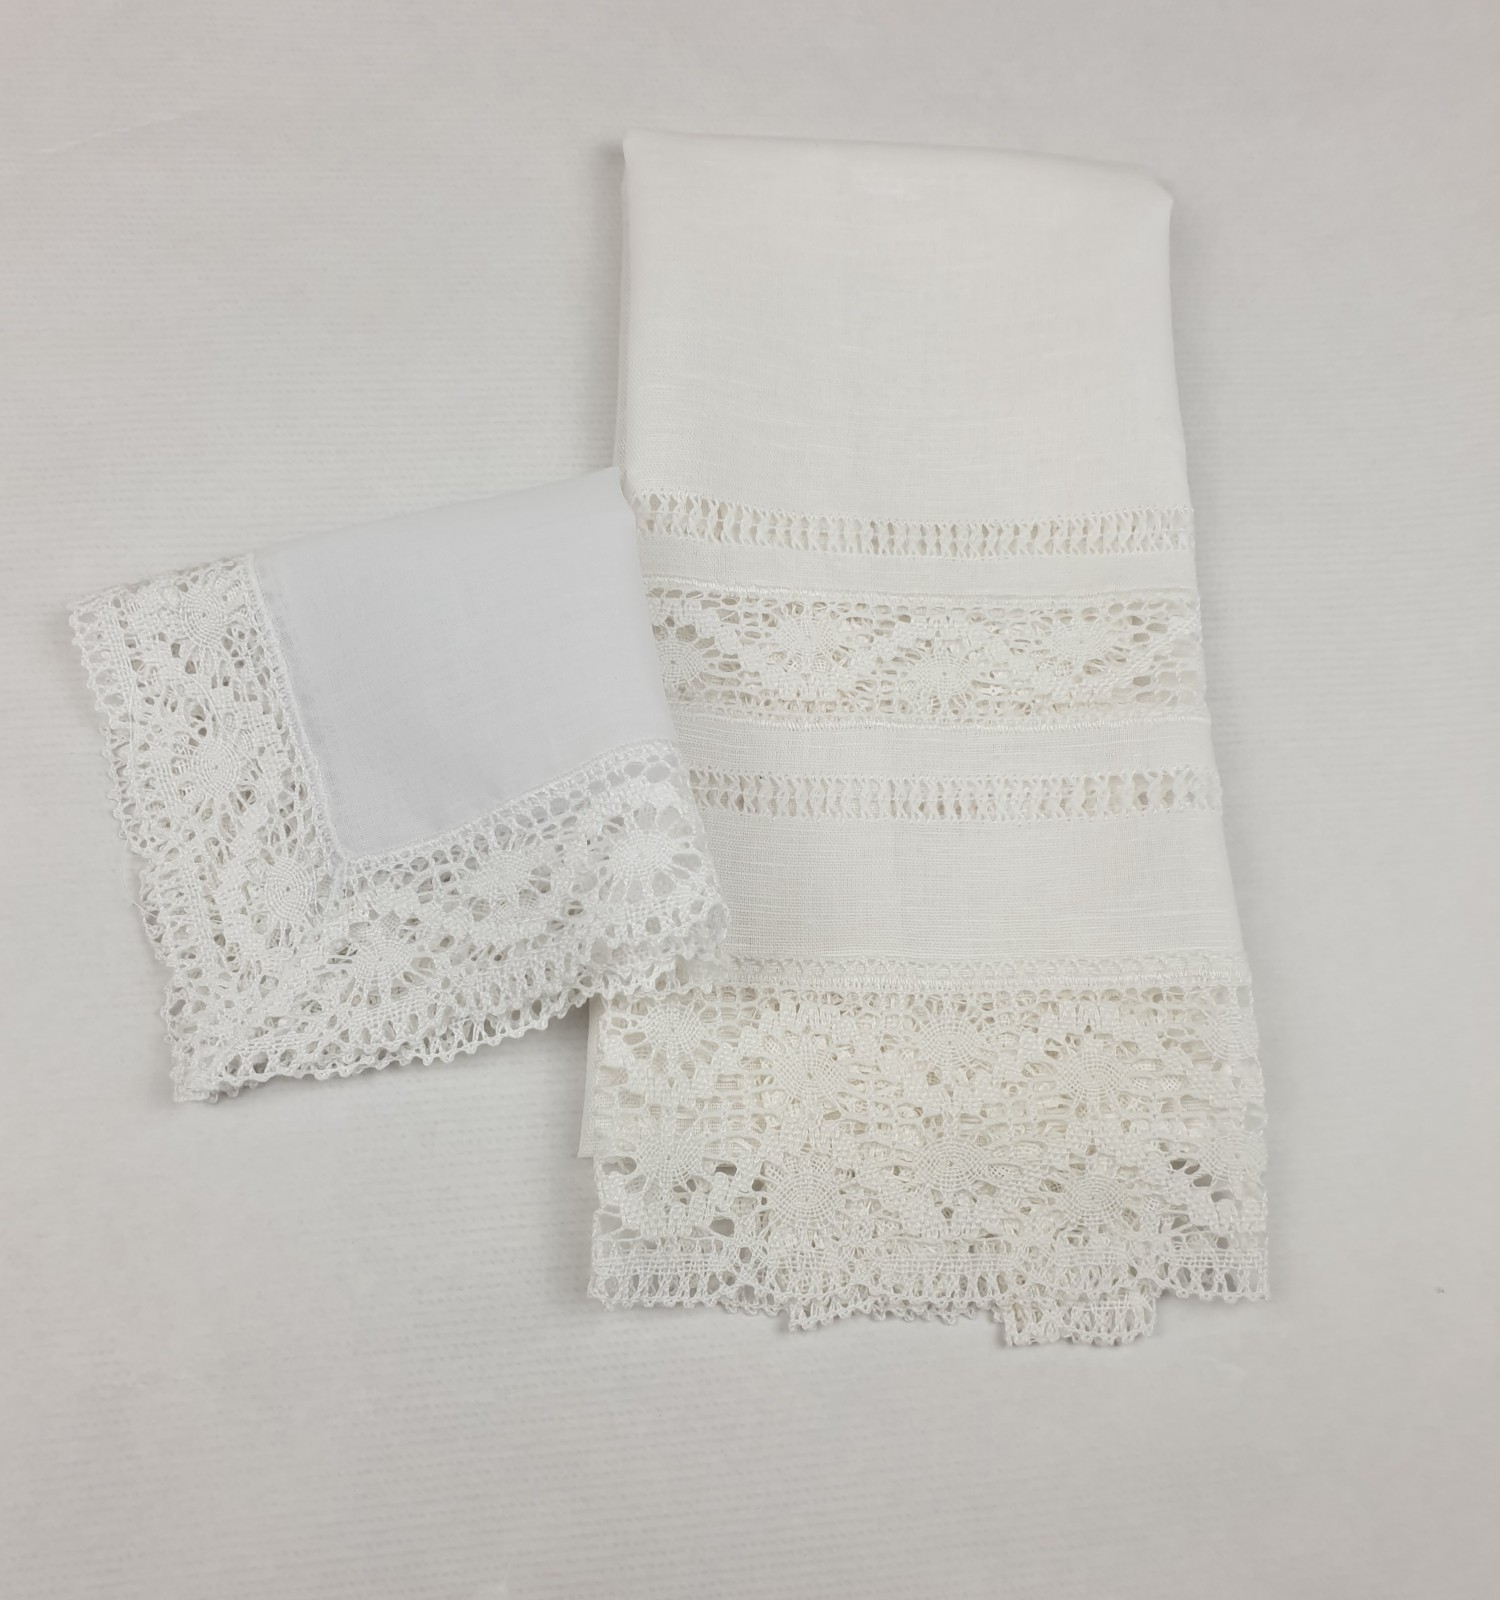 Christening pack, towel and diamond handkerchief